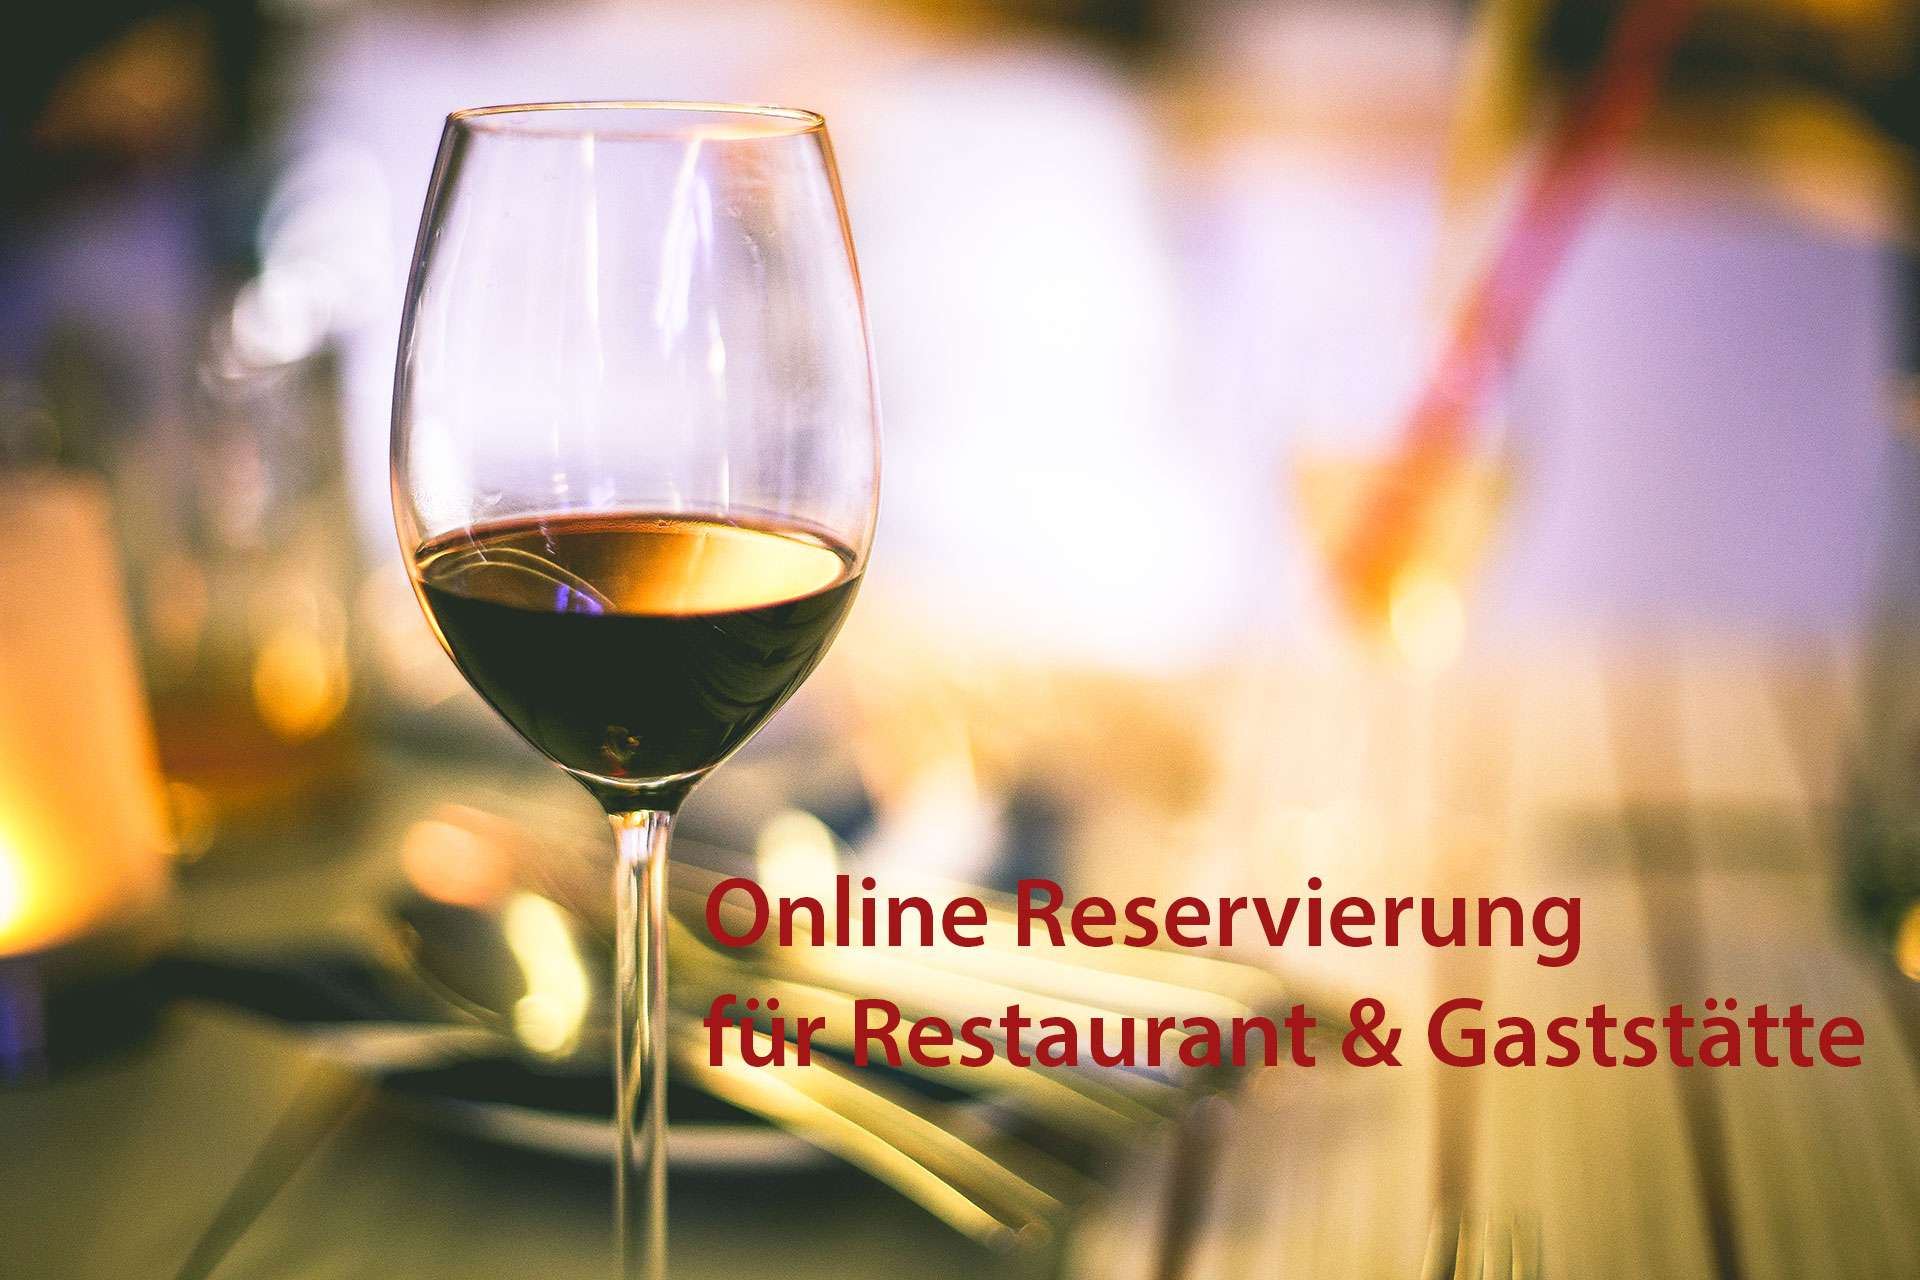 Online Reservierung für Restaurant und Gaststätte